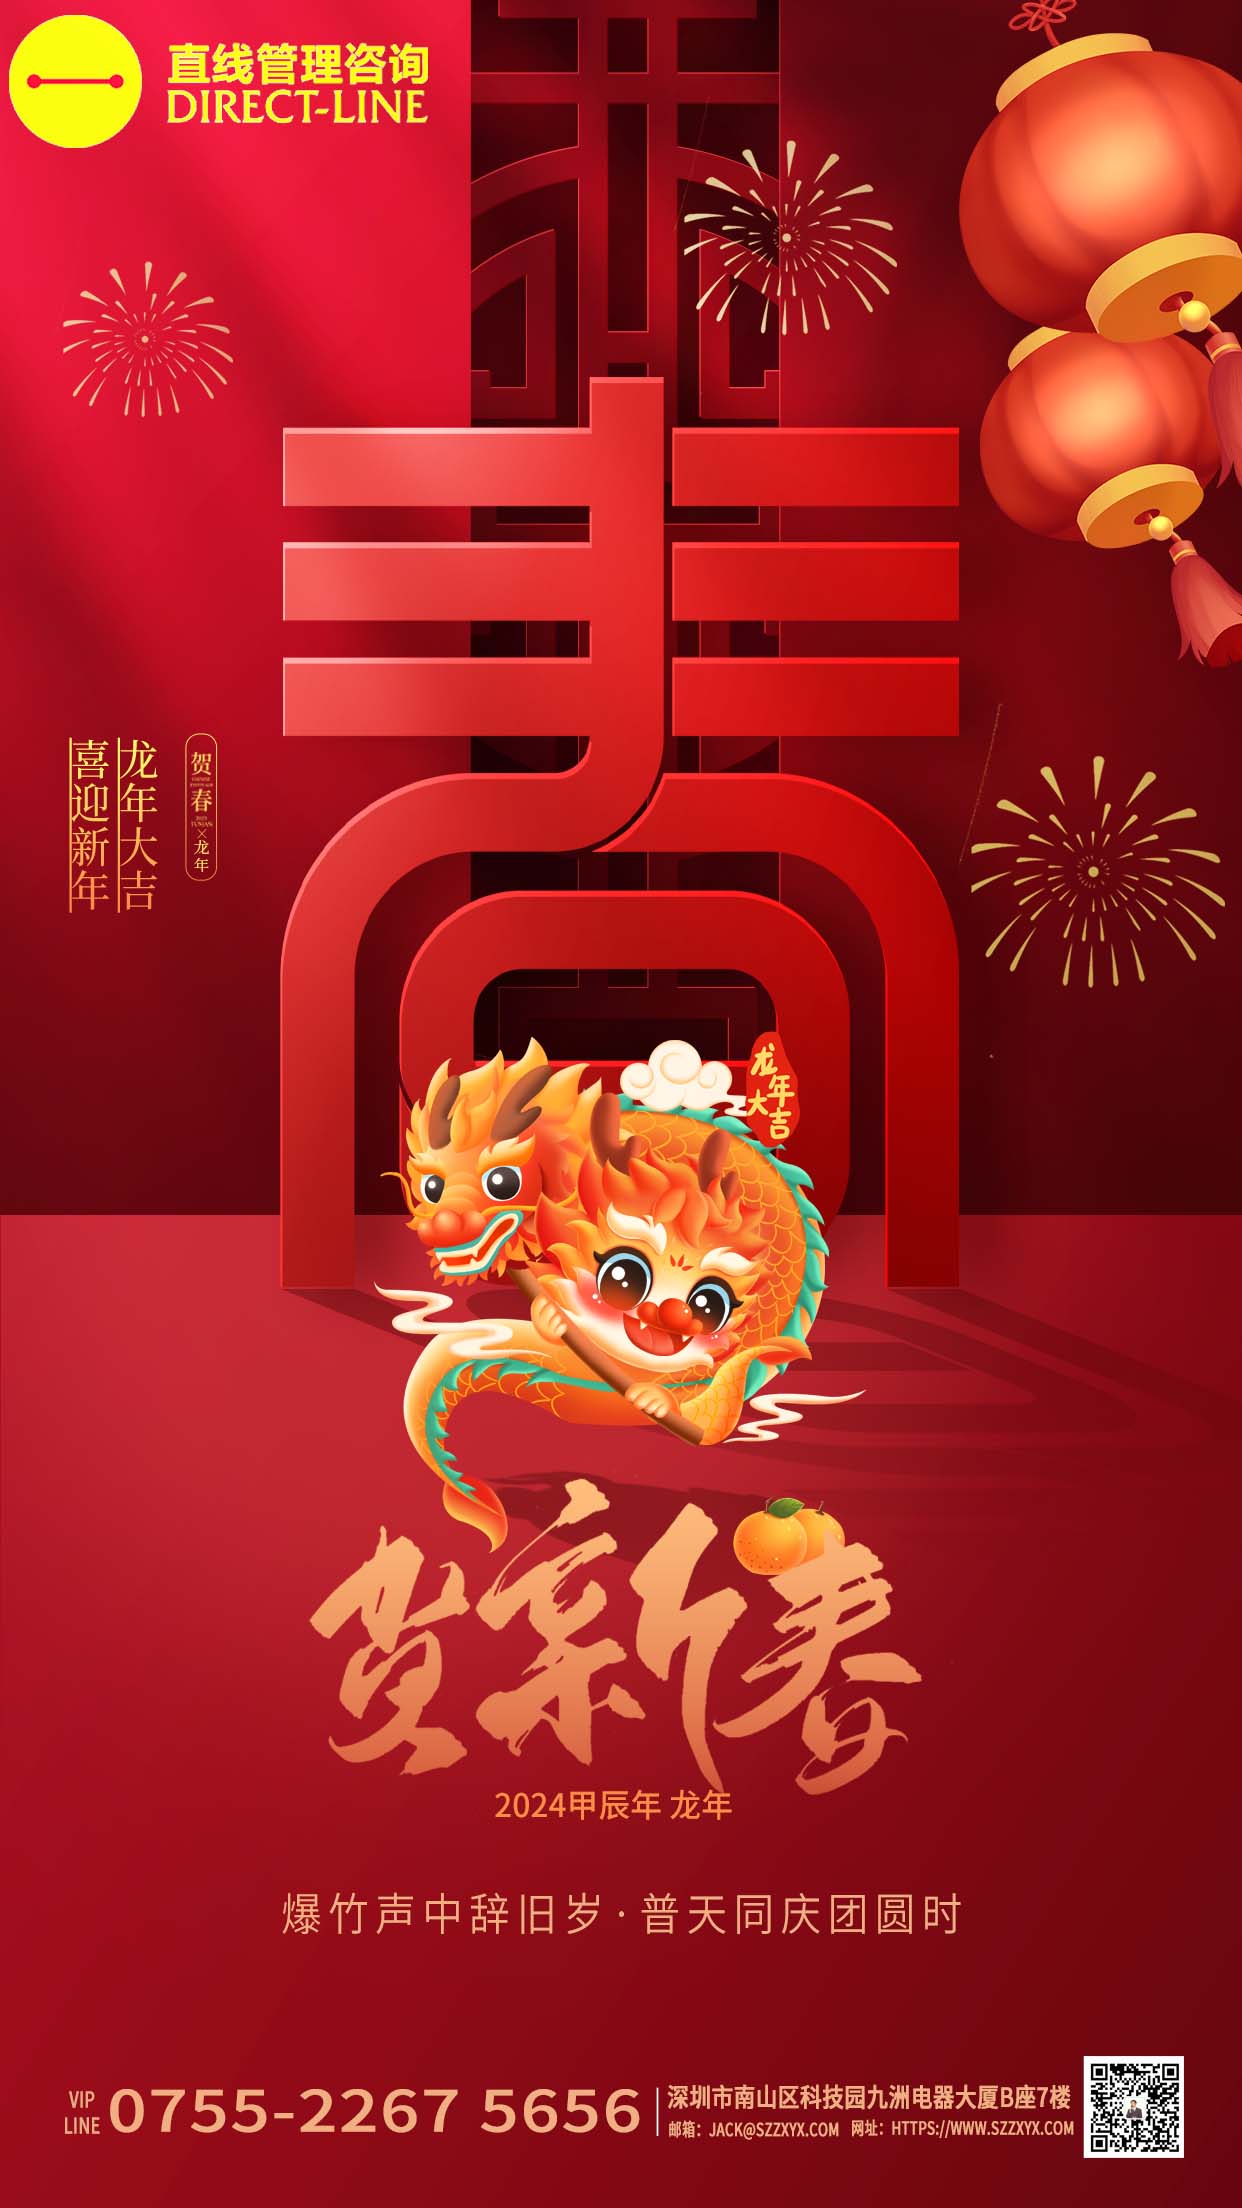 香港万向娱乐恭祝大家“喜迎新年,龙年大吉”!